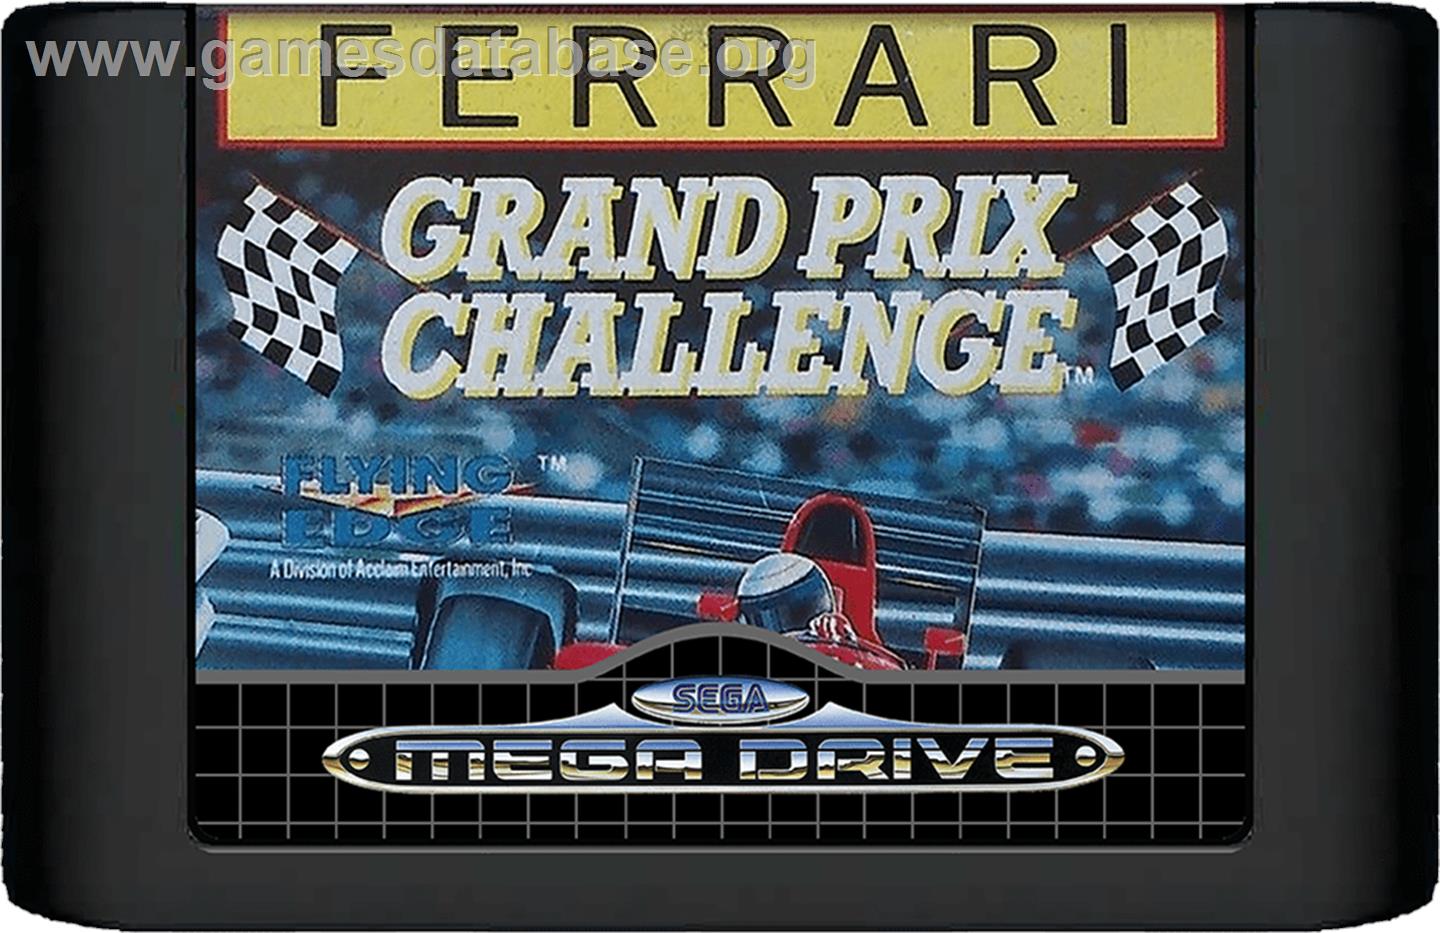 Ferrari Grand Prix Challenge - Sega Genesis - Artwork - Cartridge